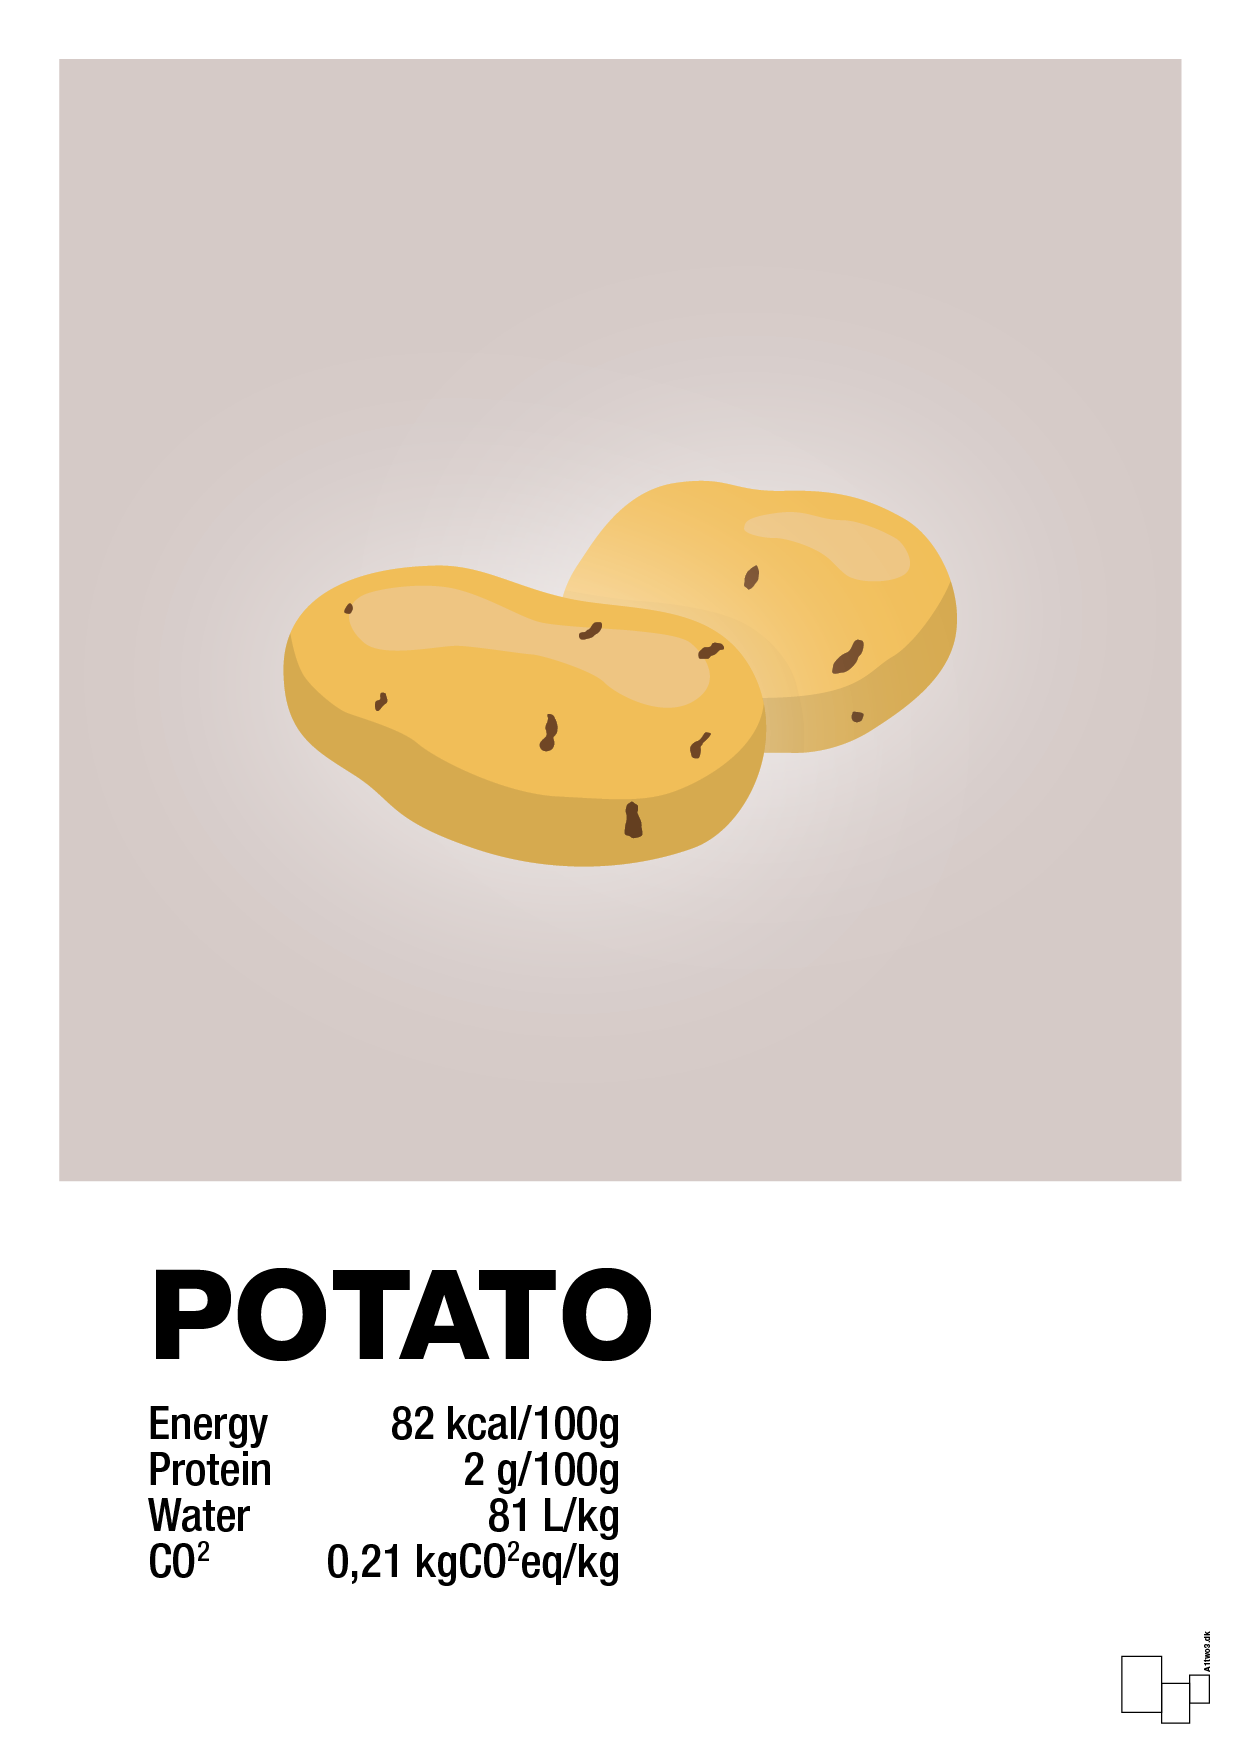 potato nutrition og miljø - Plakat med Mad & Drikke i Broken Beige